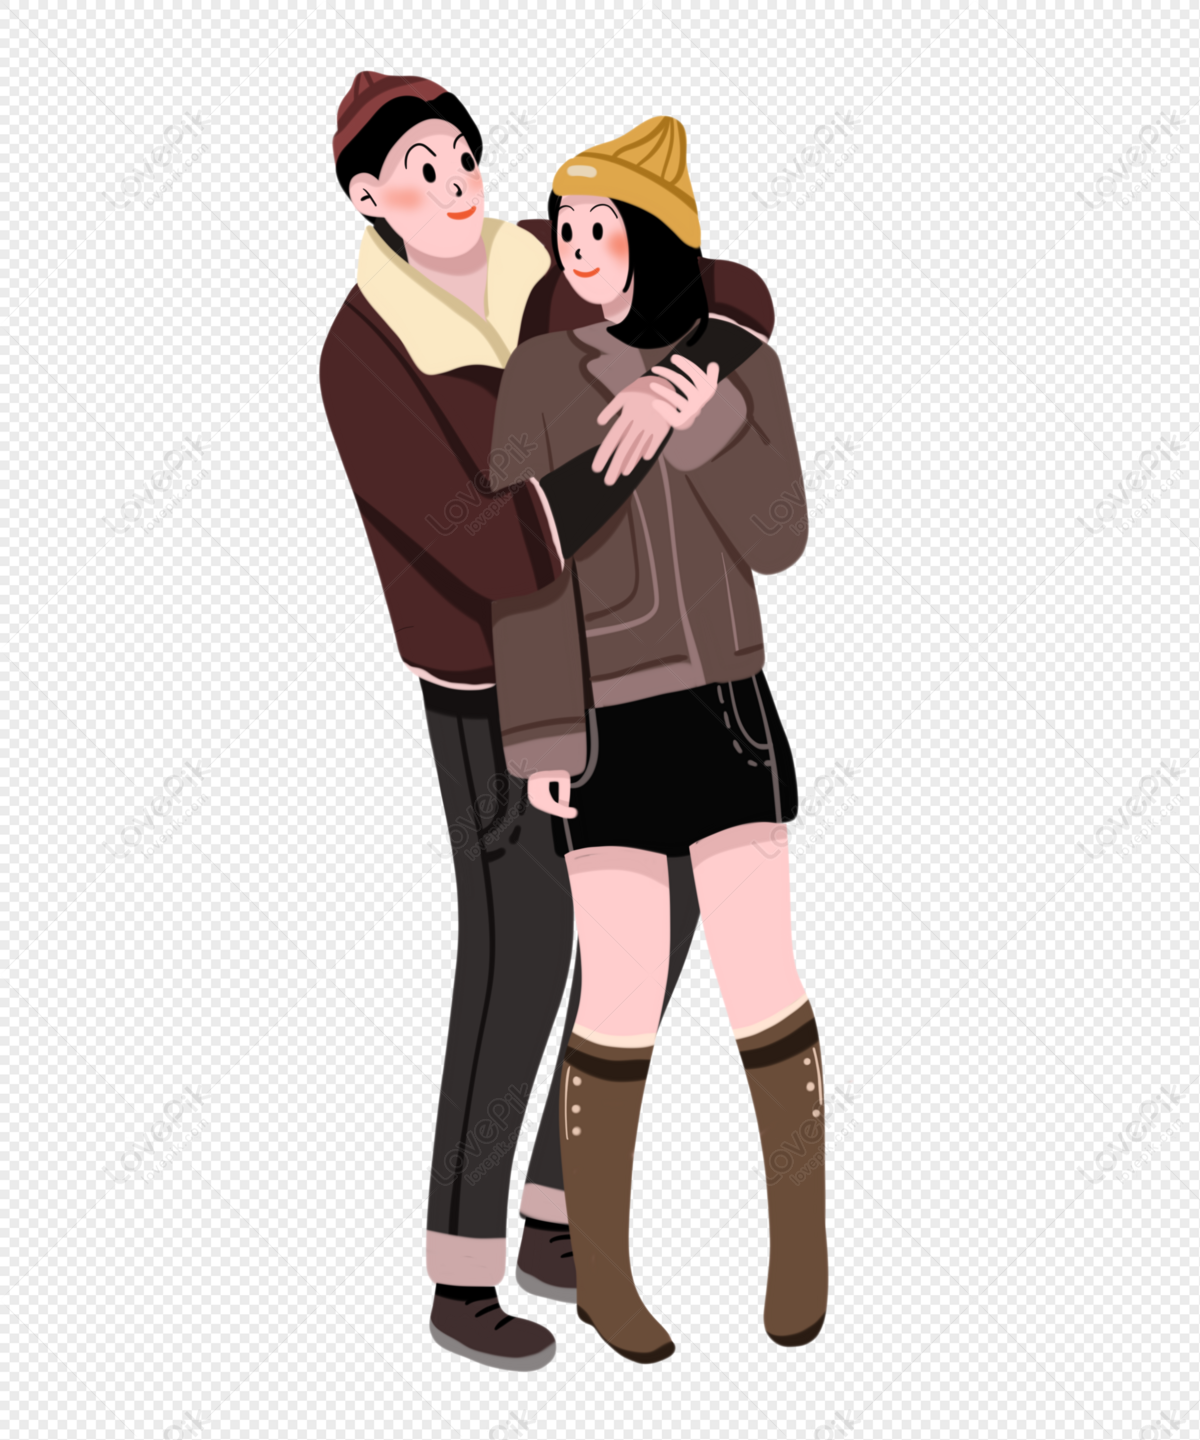 Cặp đôi ôm nhau PNG miễn phí là một bức ảnh đẹp và thú vị. Hãy xem ảnh để tìm hiểu thêm về cặp đôi này và cảm nhận được sự tình tứ và ấm áp khi họ ôm nhau. Bức ảnh này là miễn phí, nên bạn hoàn toàn có thể tải về để sử dụng.